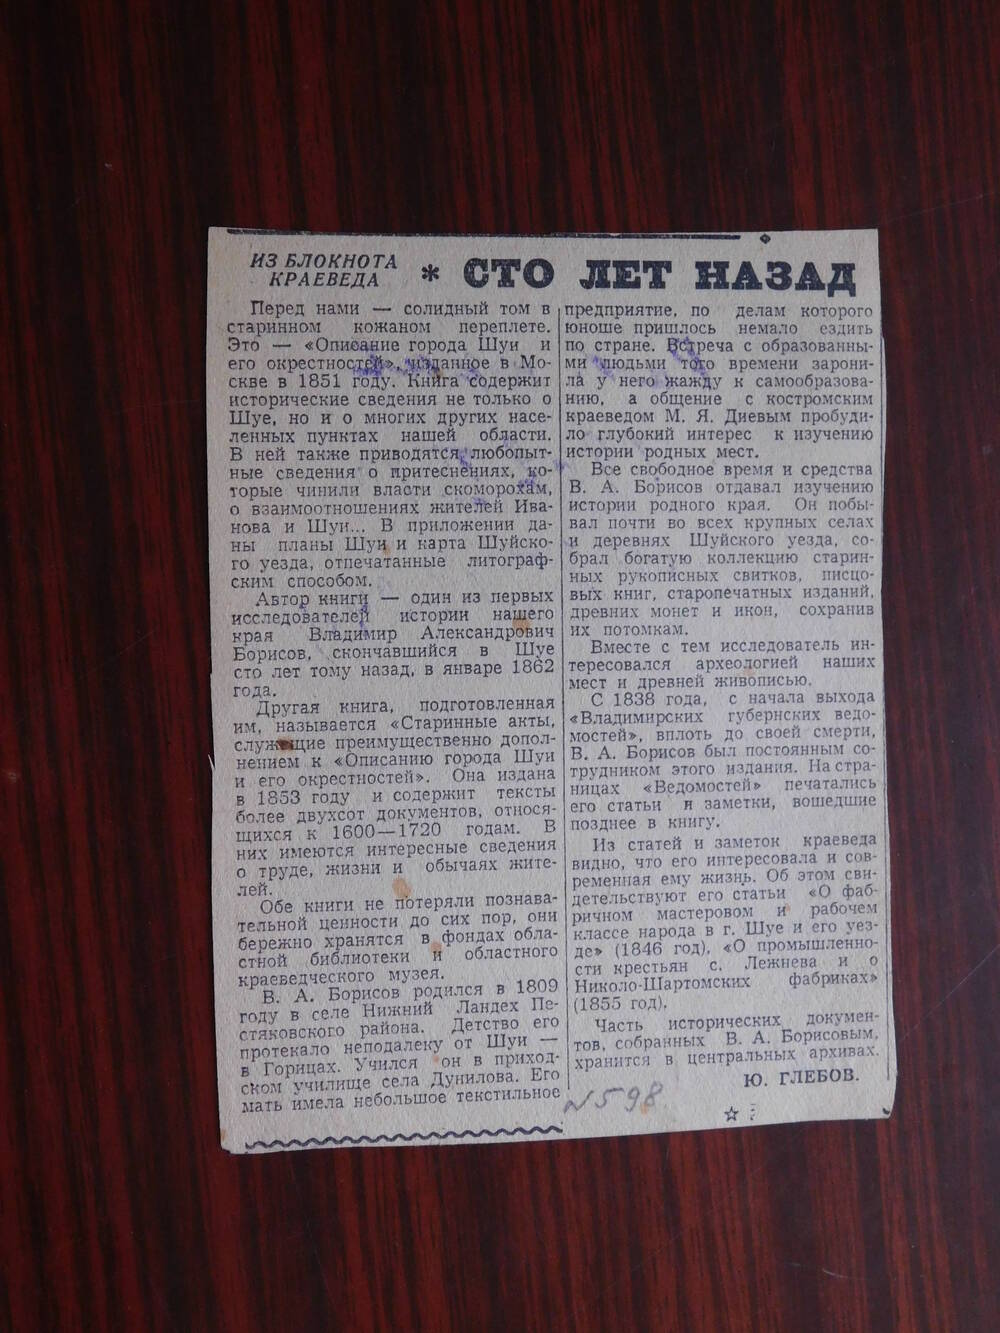 Фрагмент газеты Рабочий край № 35(12040) от 10.02.1962 г. Ст. Ю. Глебов. Сто лет назад. Иваново.